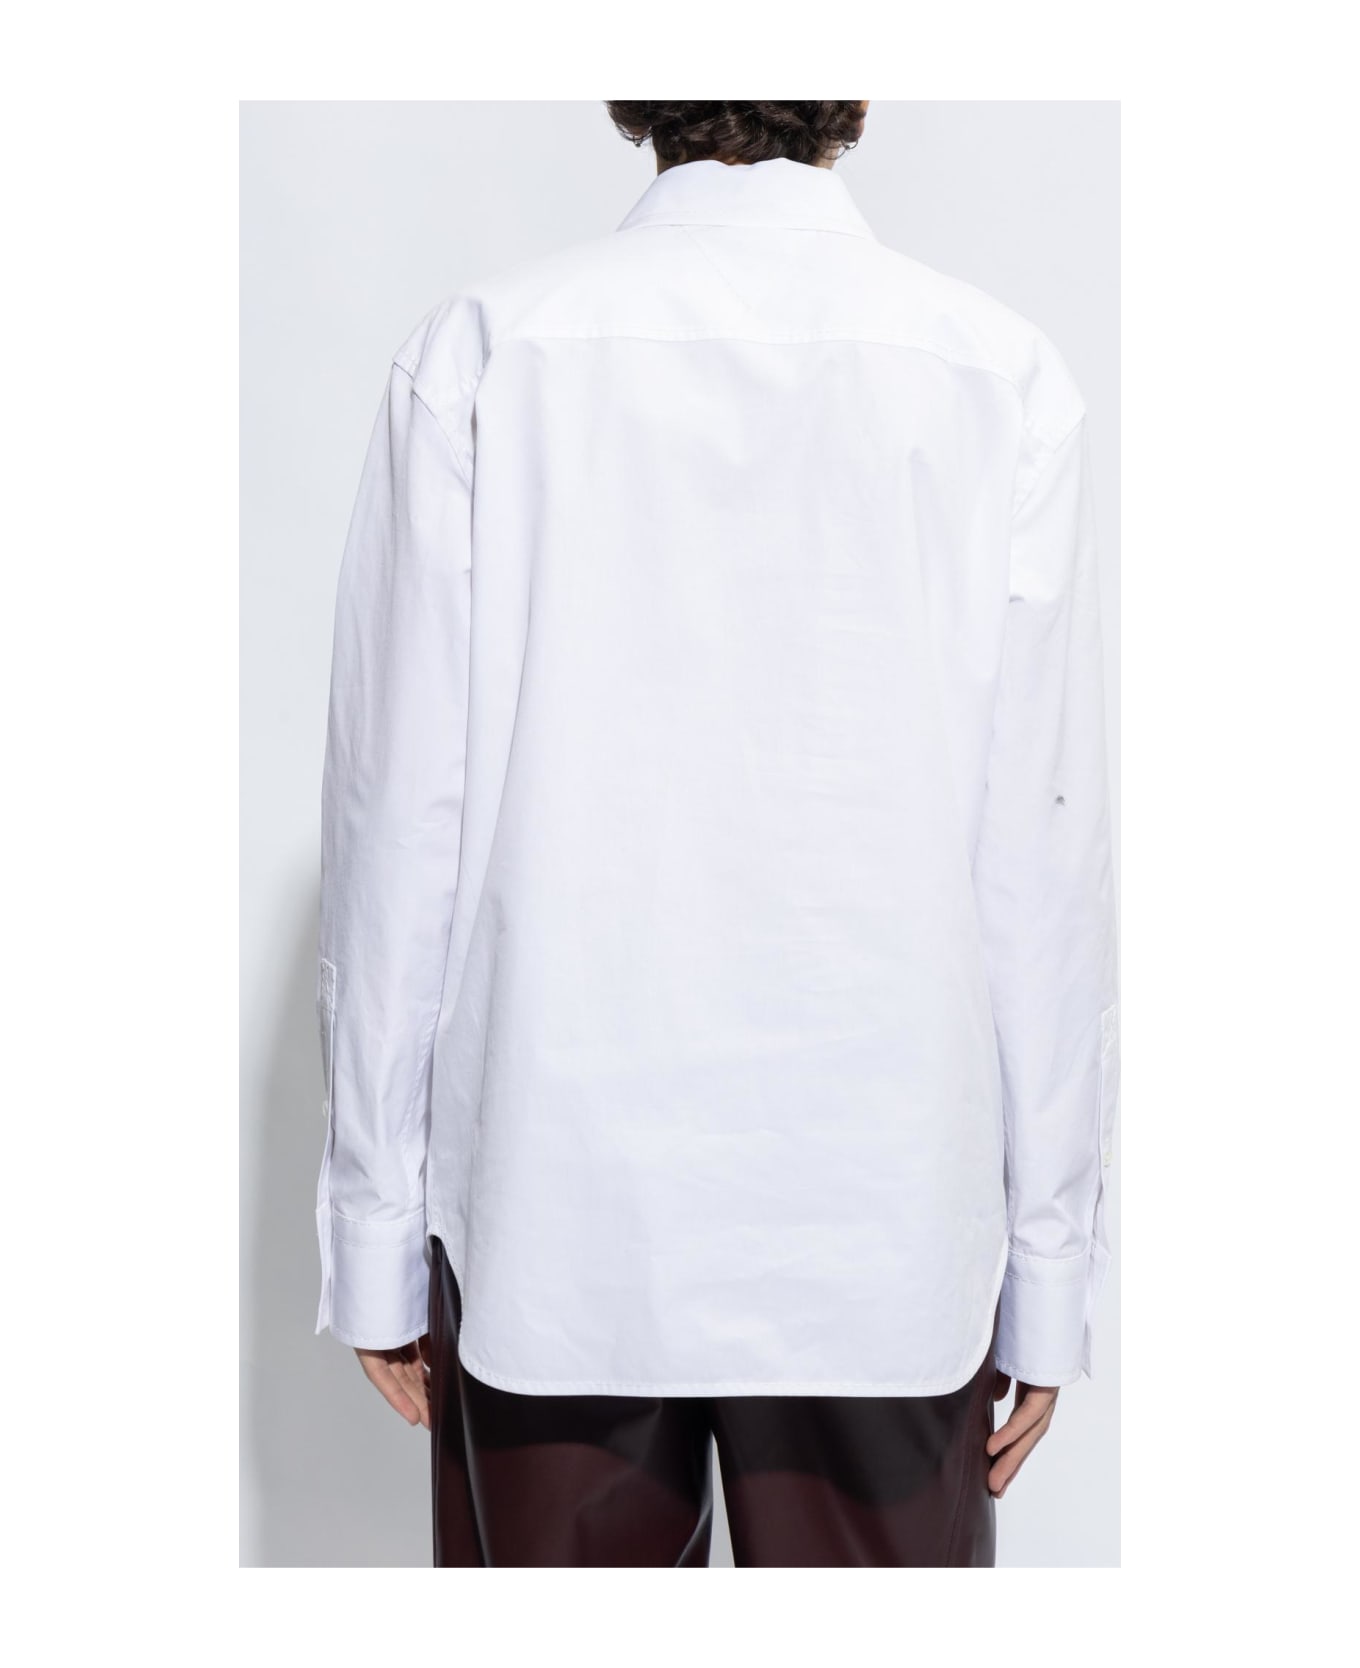 Bottega Veneta Shirt - White シャツ